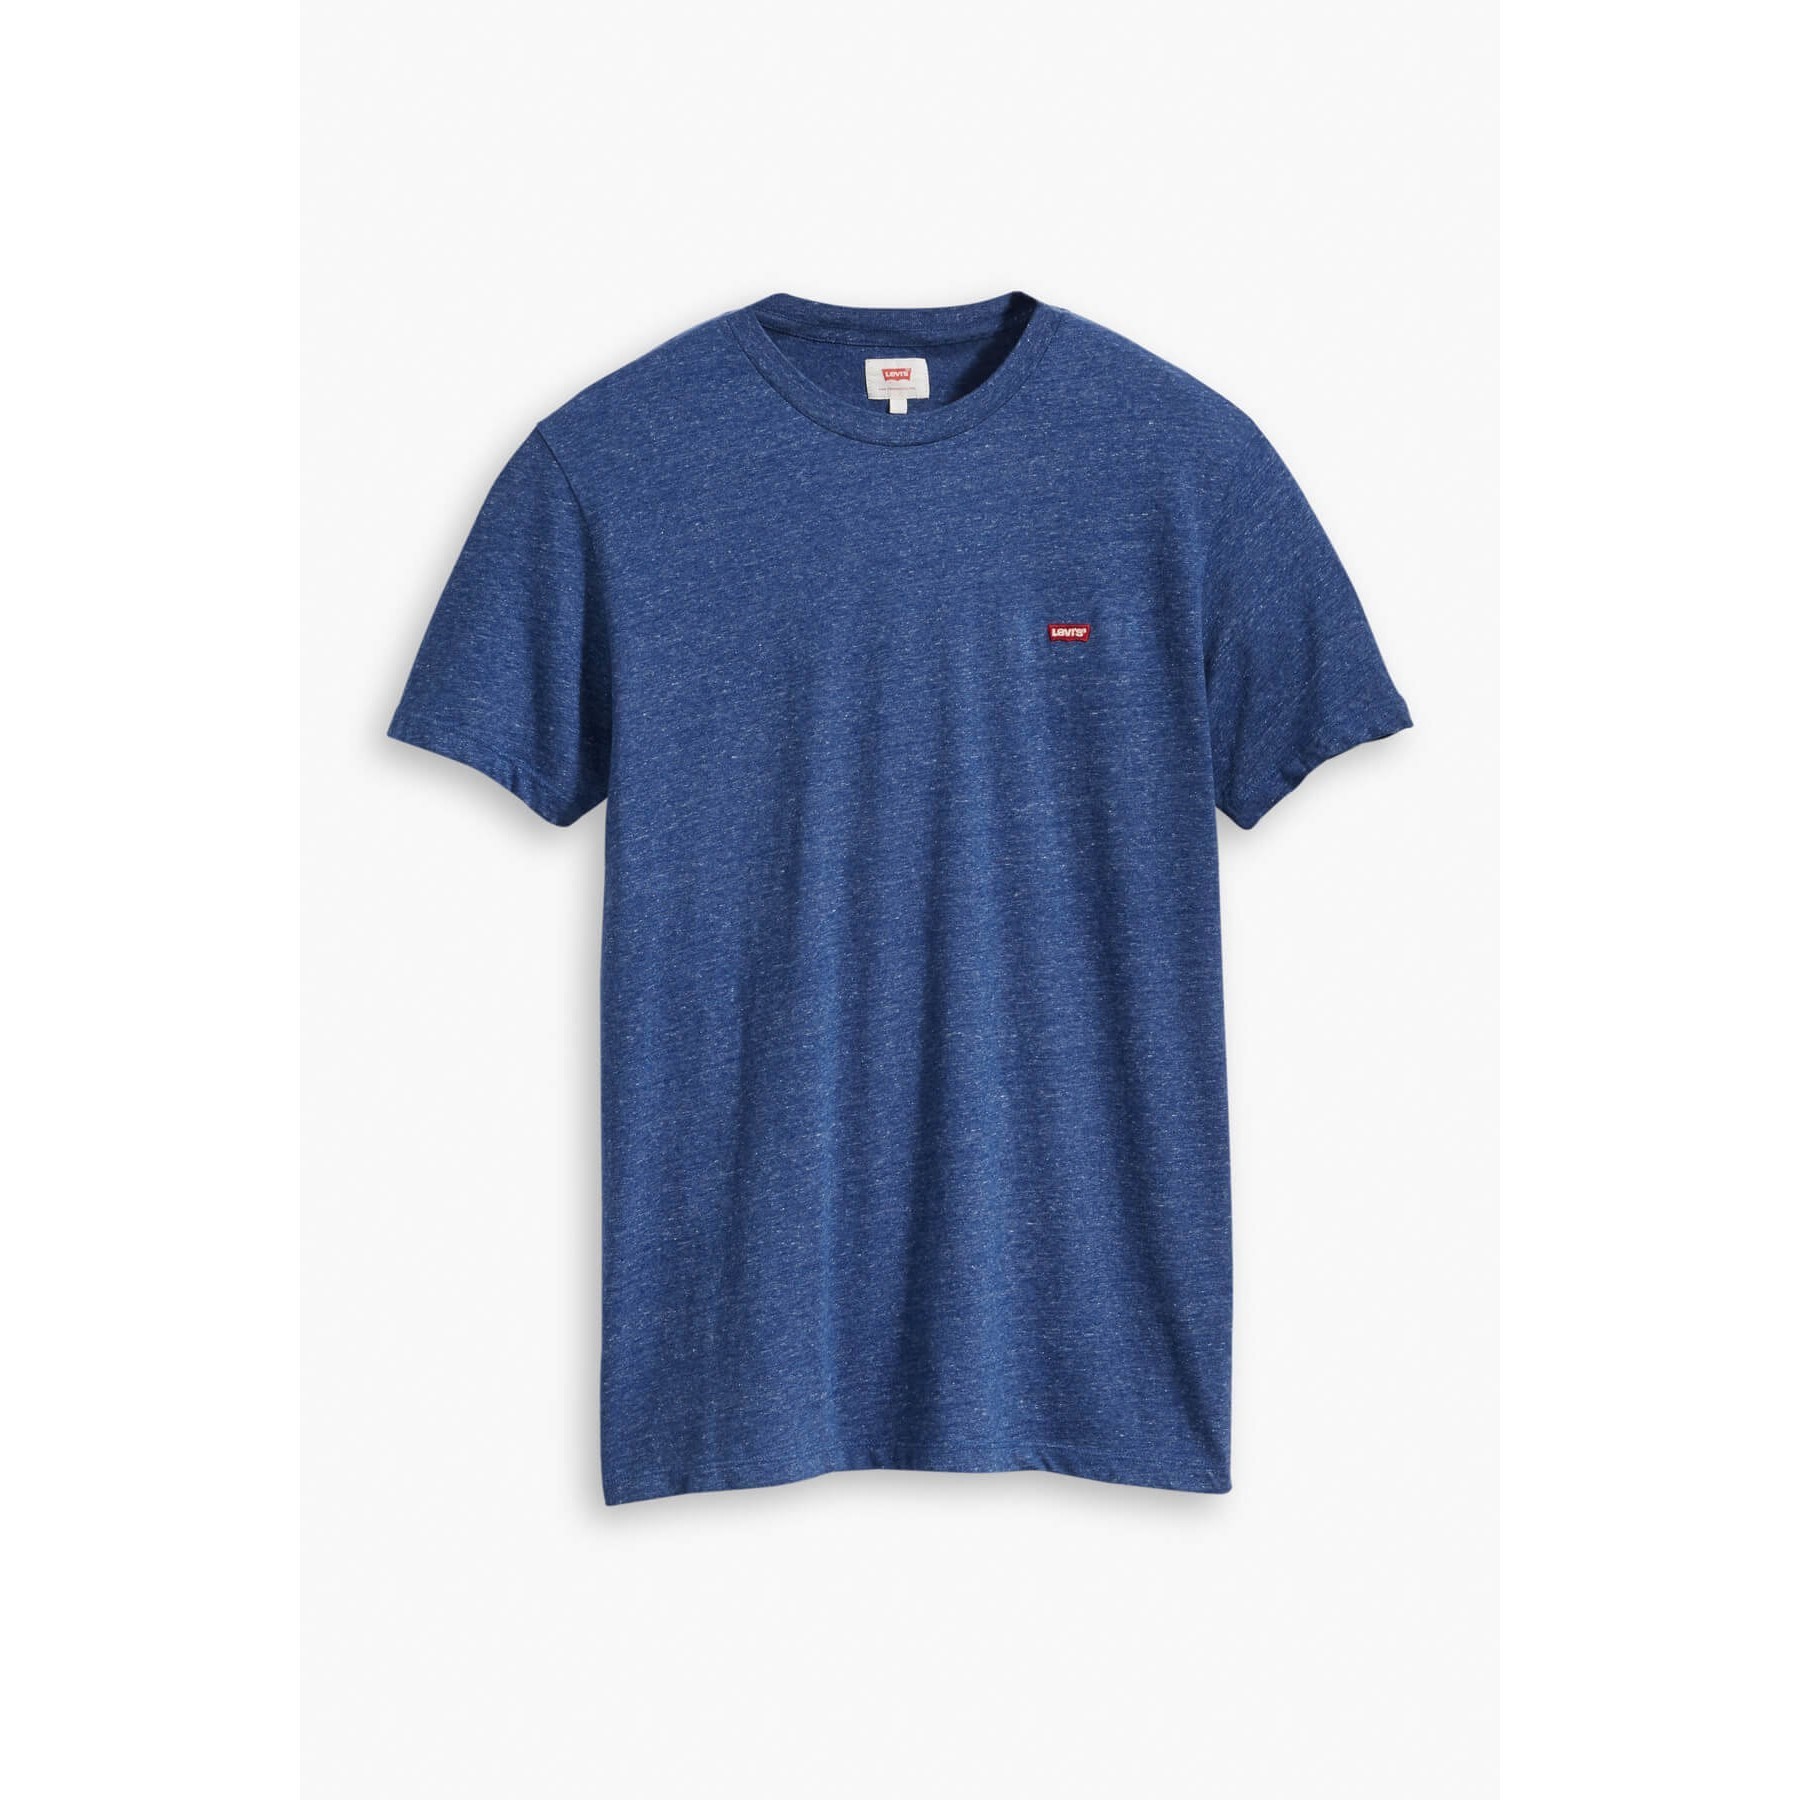 Levis Erkek T-Shirt 56605-0001 